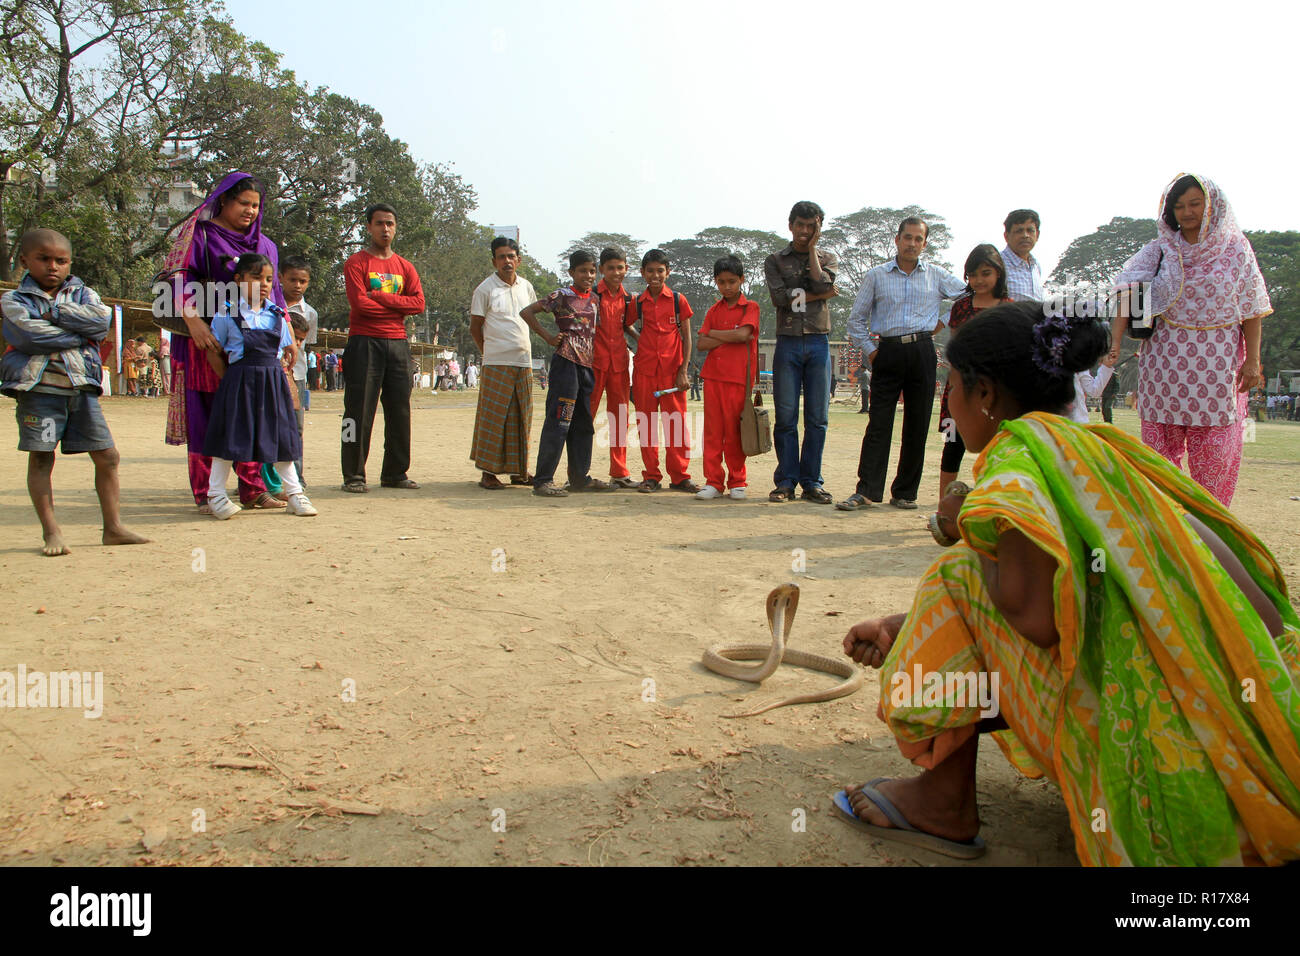 Snake charmer performs with snake. Dhaka, Bangladesh. Stock Photo